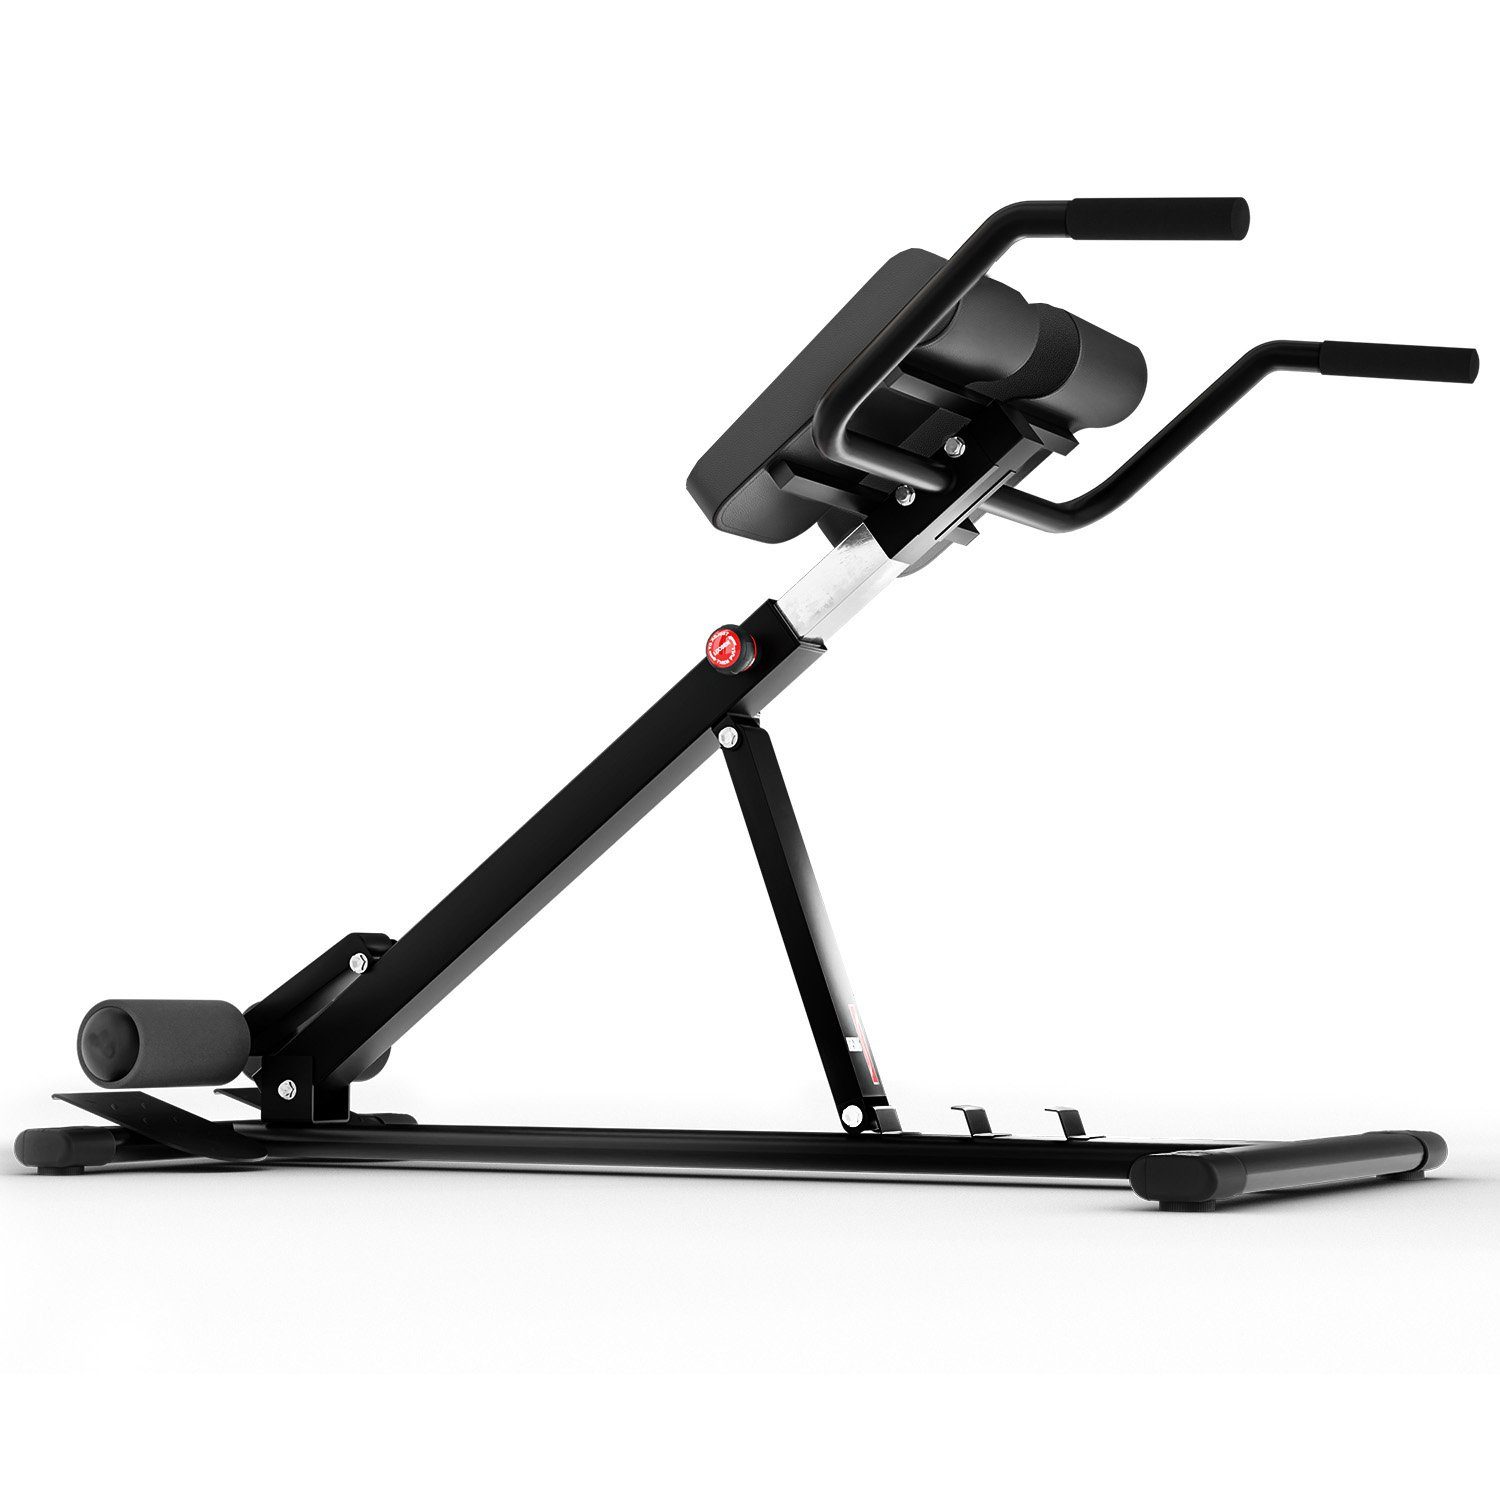 Technofit verstellbar Rückentrainer Home Rückentrainer ergonomisch, Krafttraining Rückenstrecker Bauch Gym Zuhause